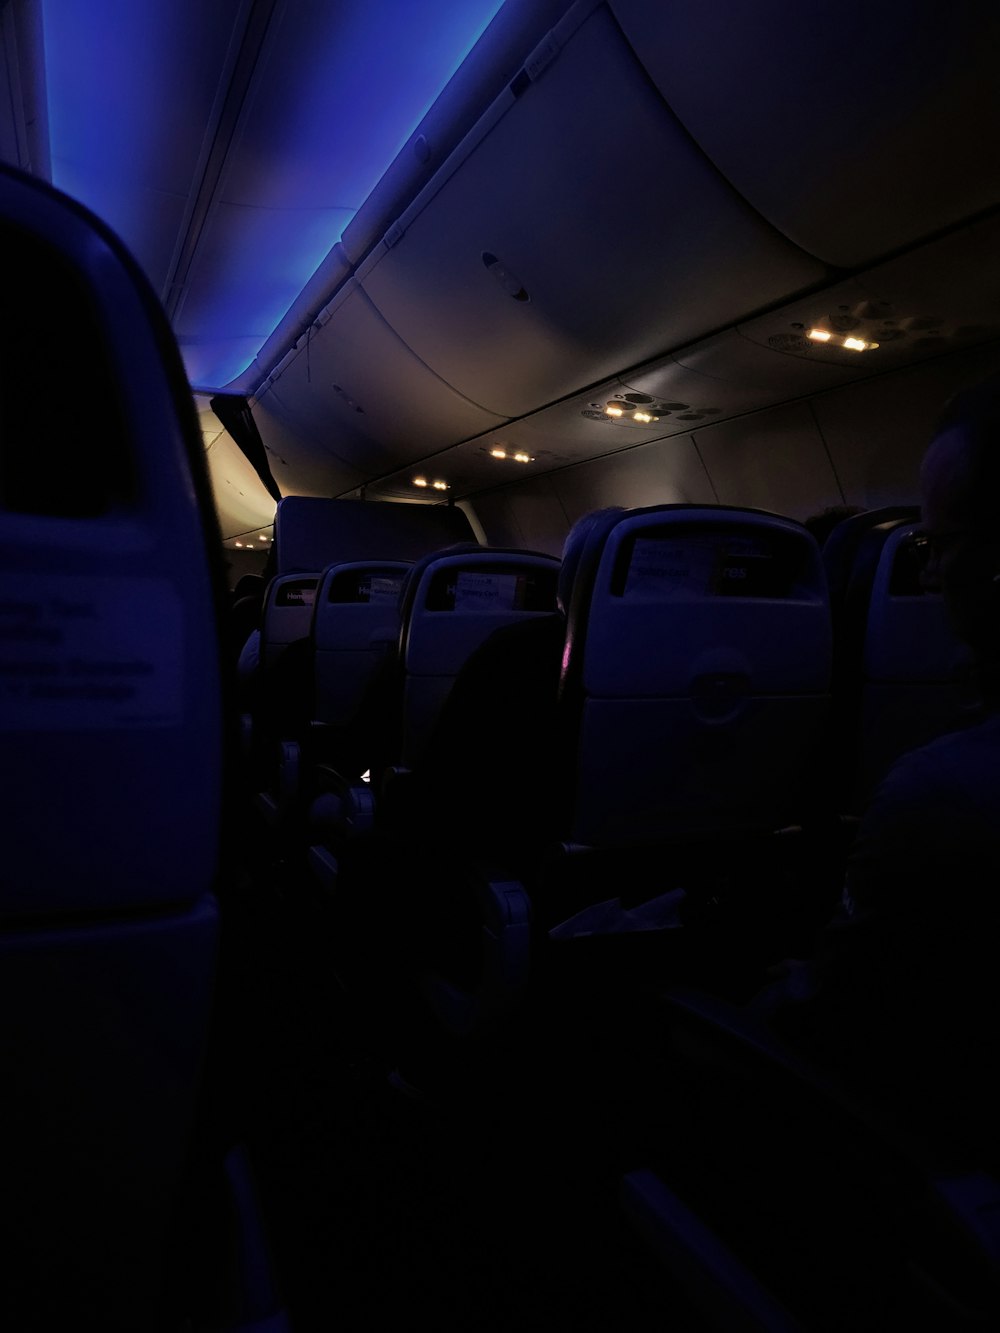 Das Innere eines Flugzeugs mit Blaulicht